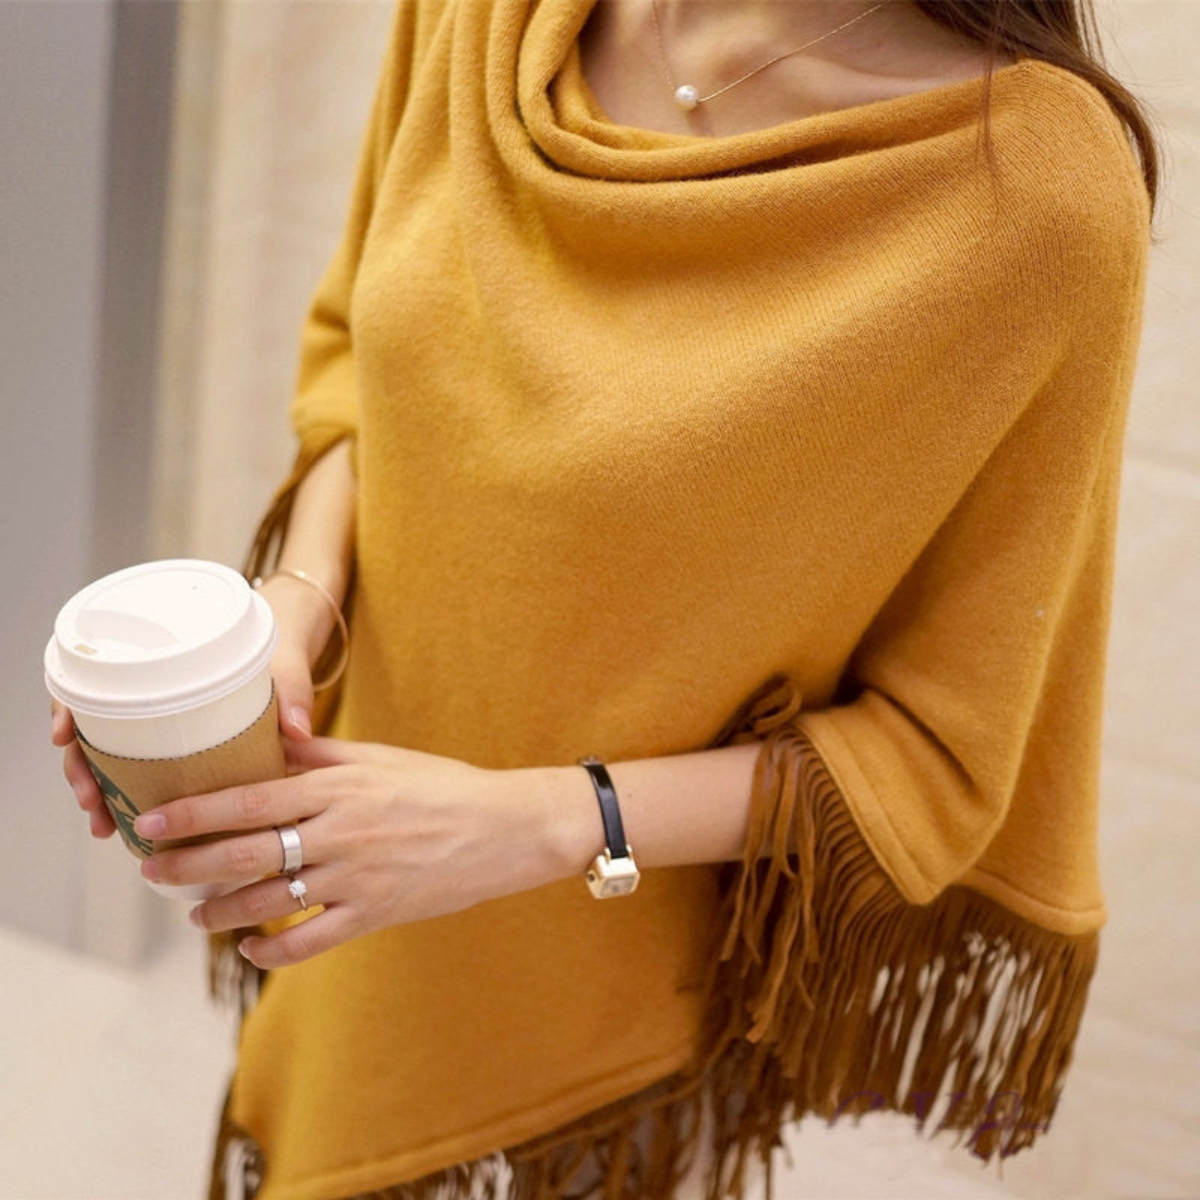 Women's Elegant Fashion Sweater Autumn Cloak Shawl